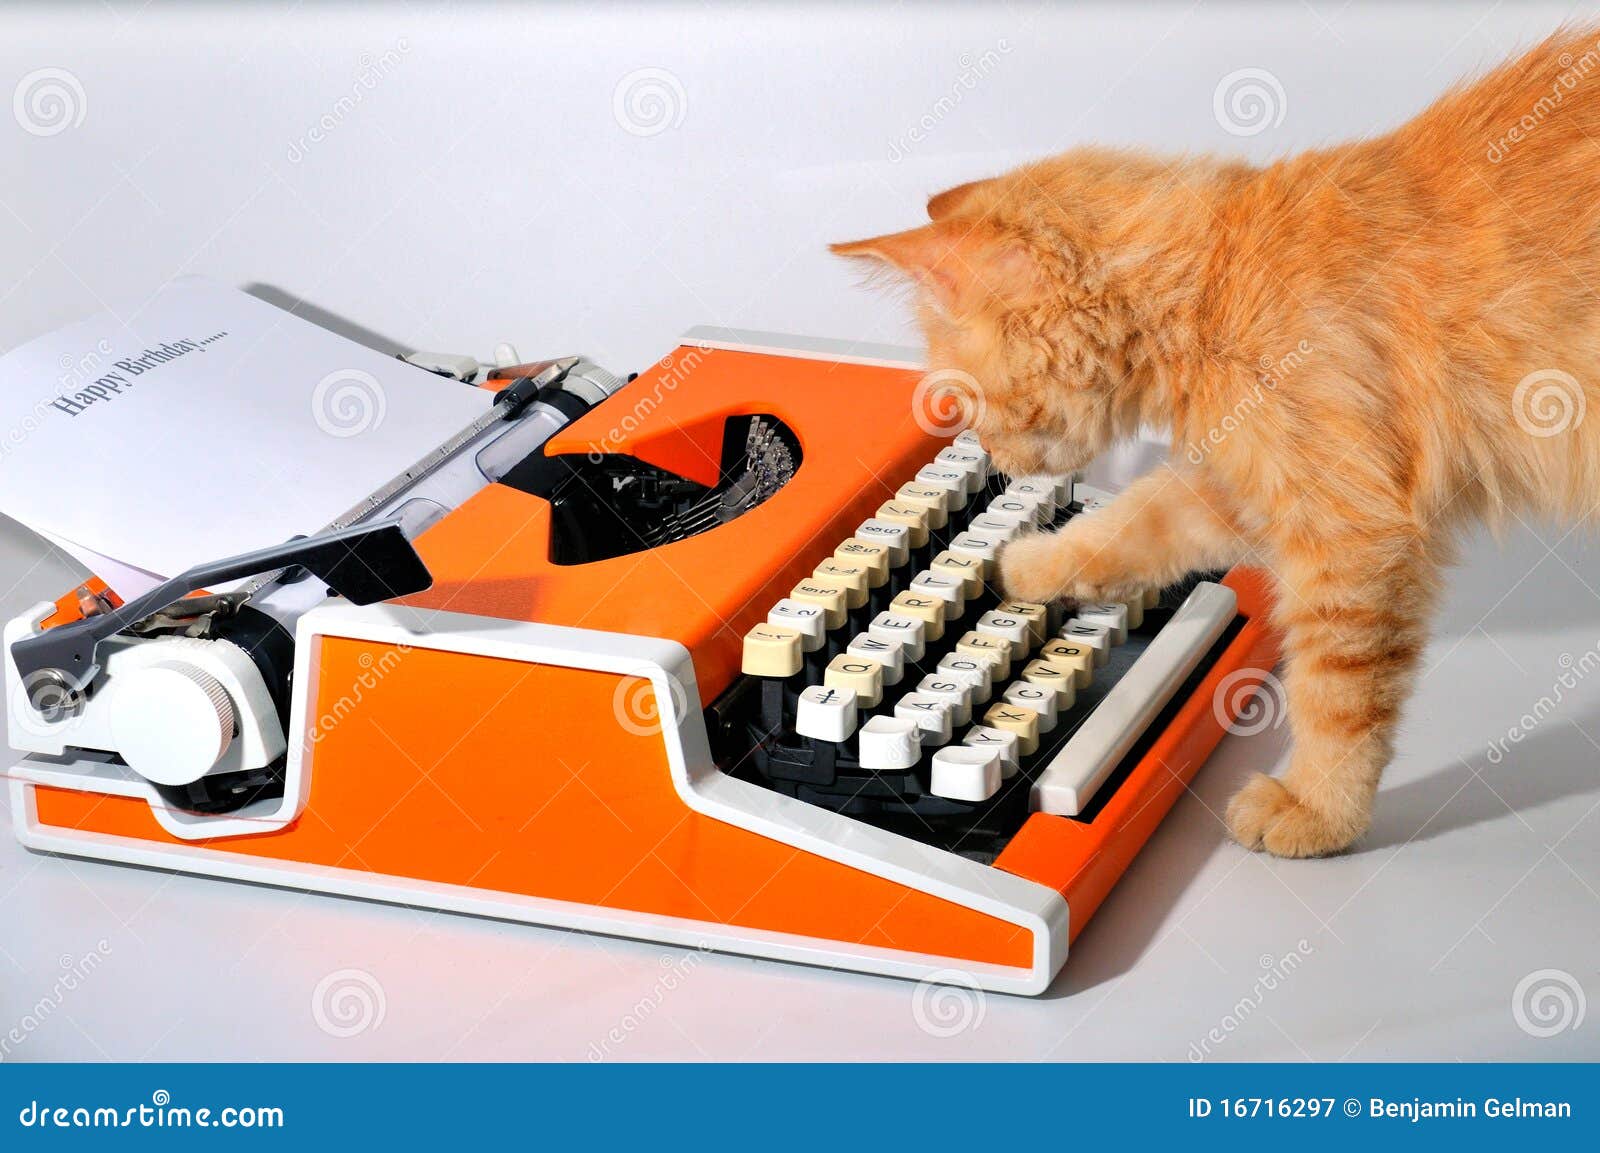 orangie & typewriter